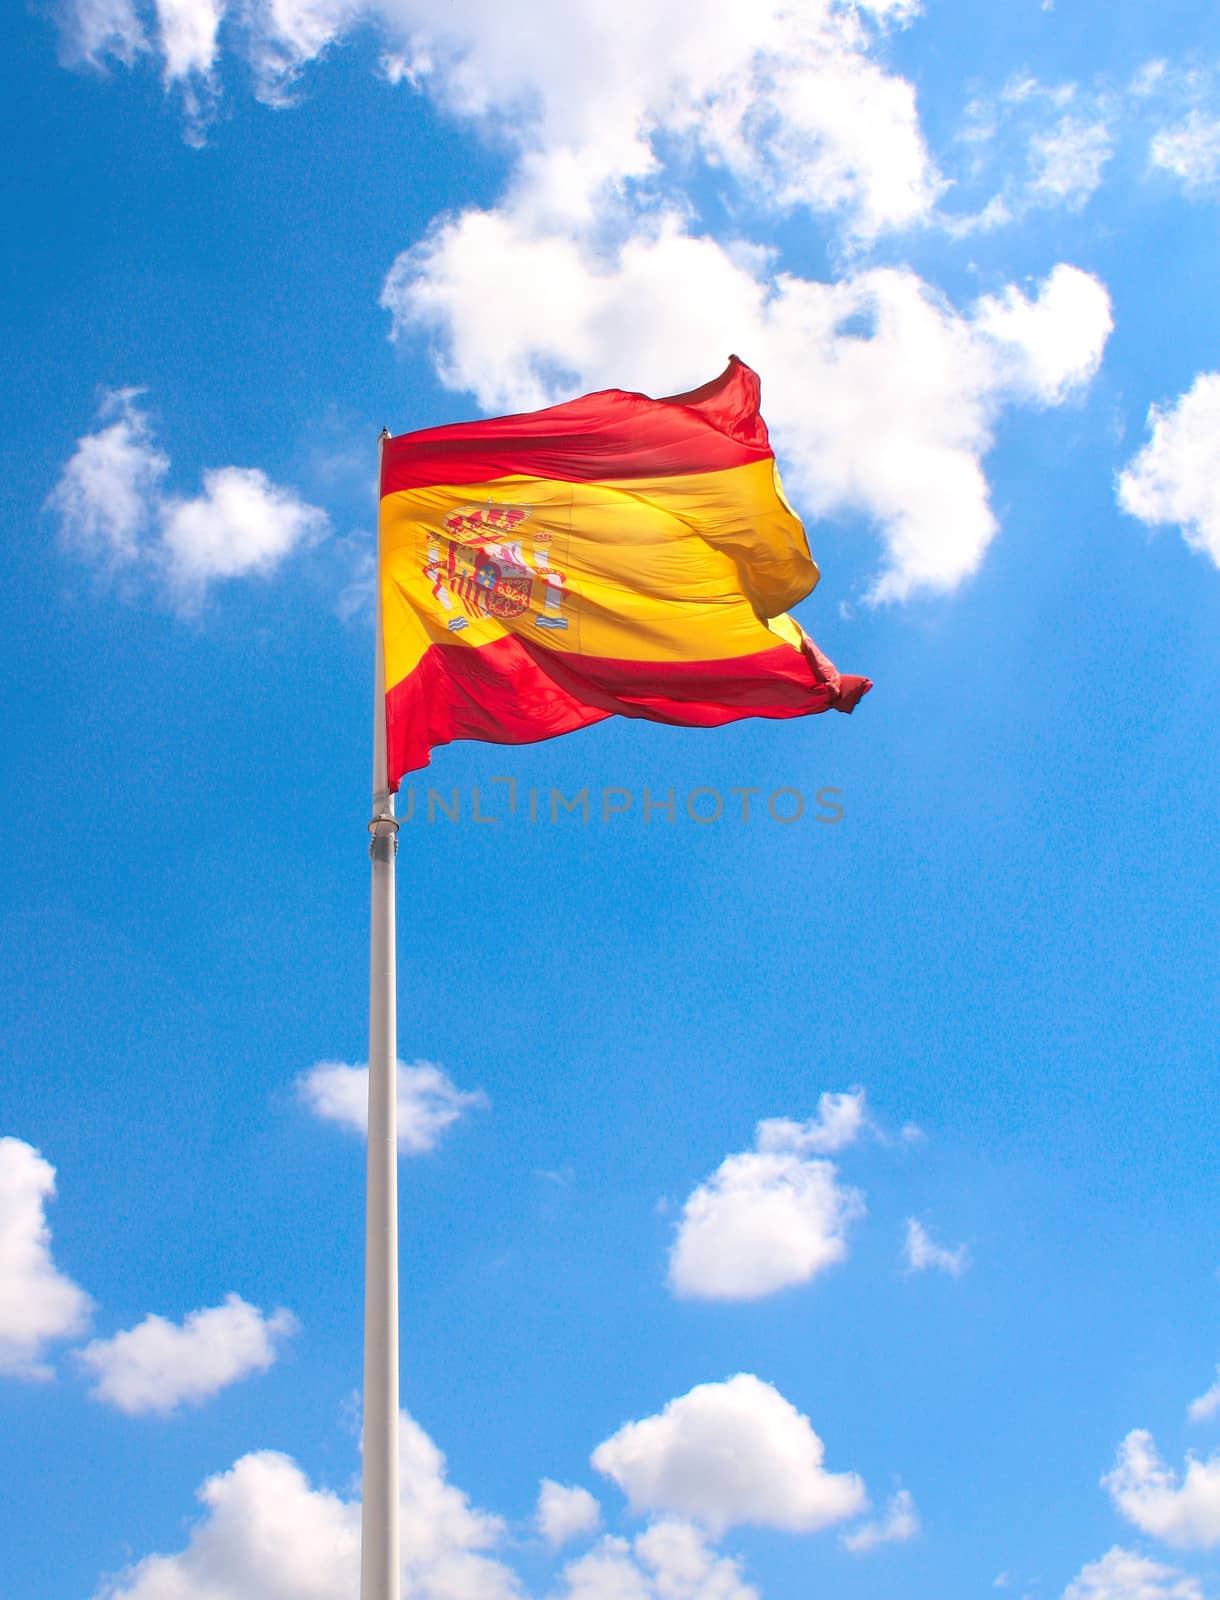 Flag of Spain by frenta